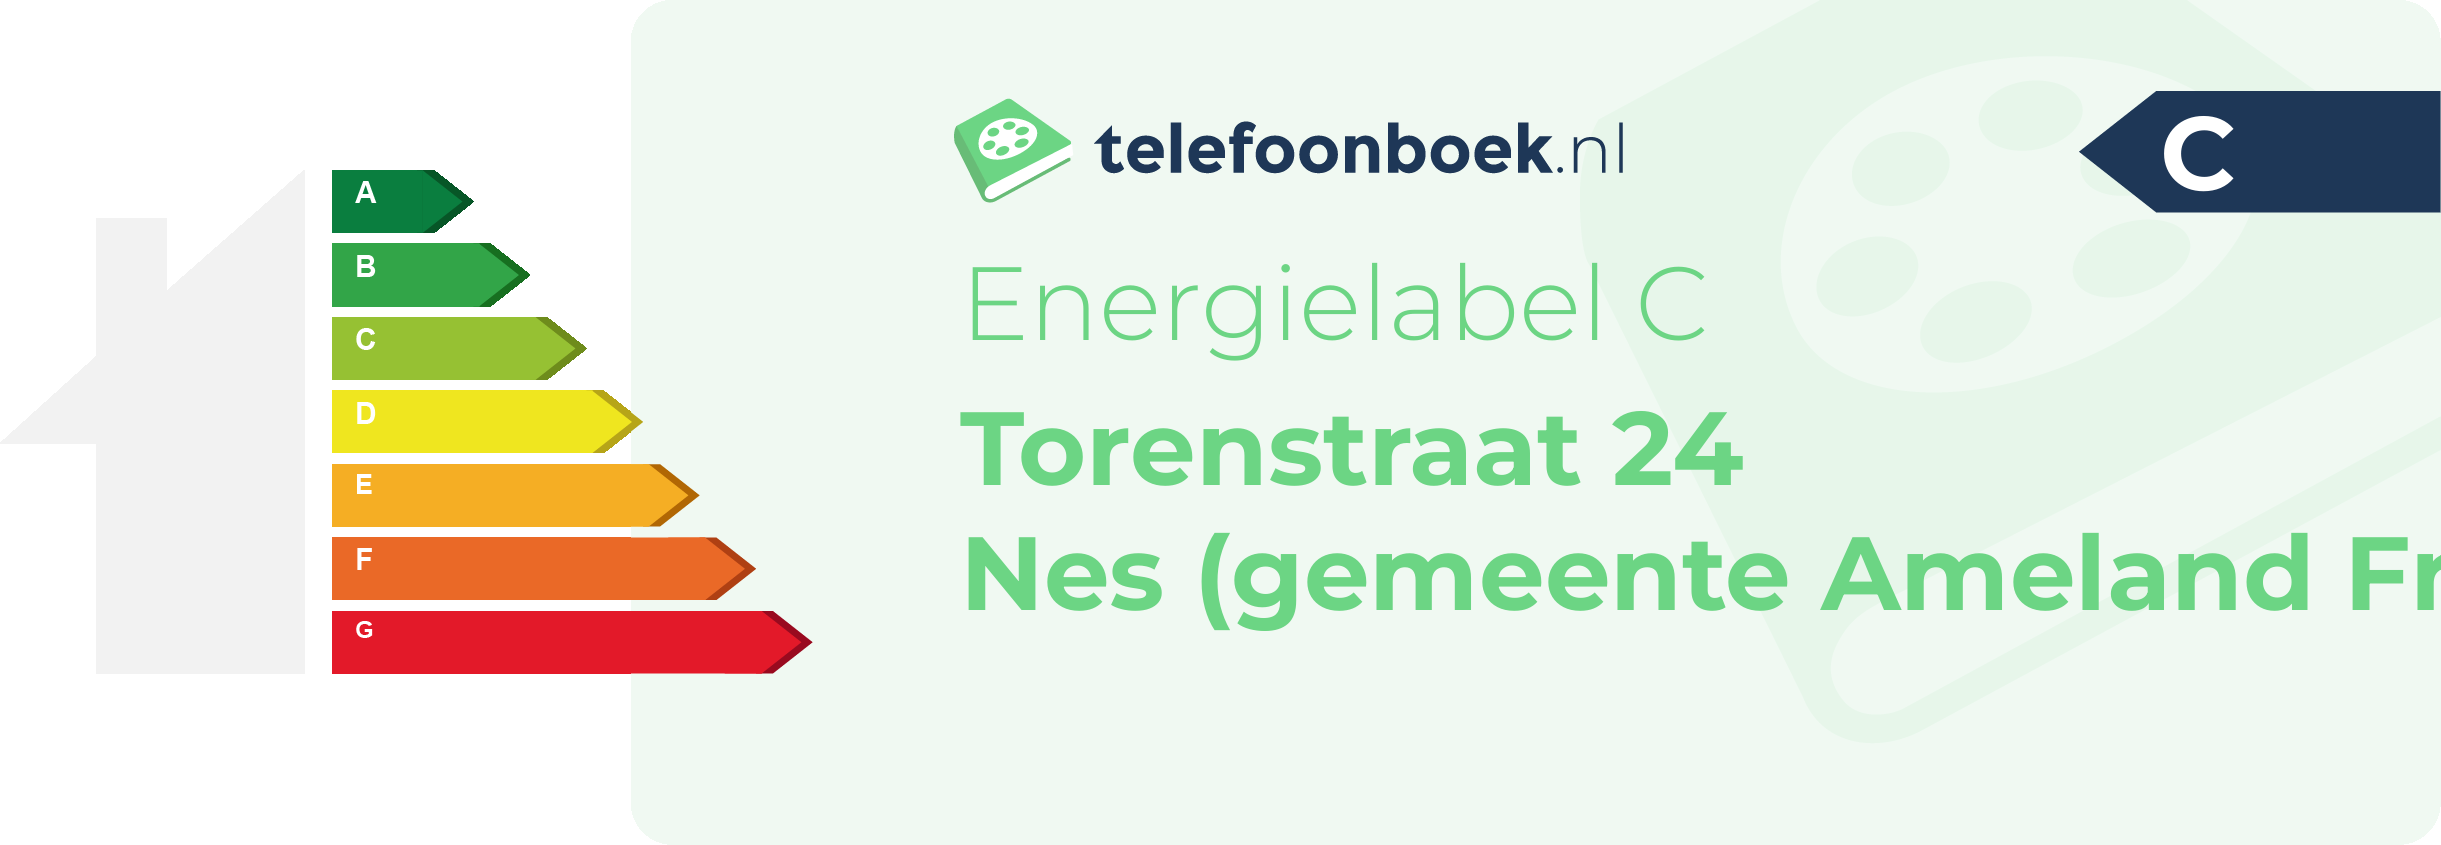 Energielabel Torenstraat 24 Nes (gemeente Ameland Friesland)